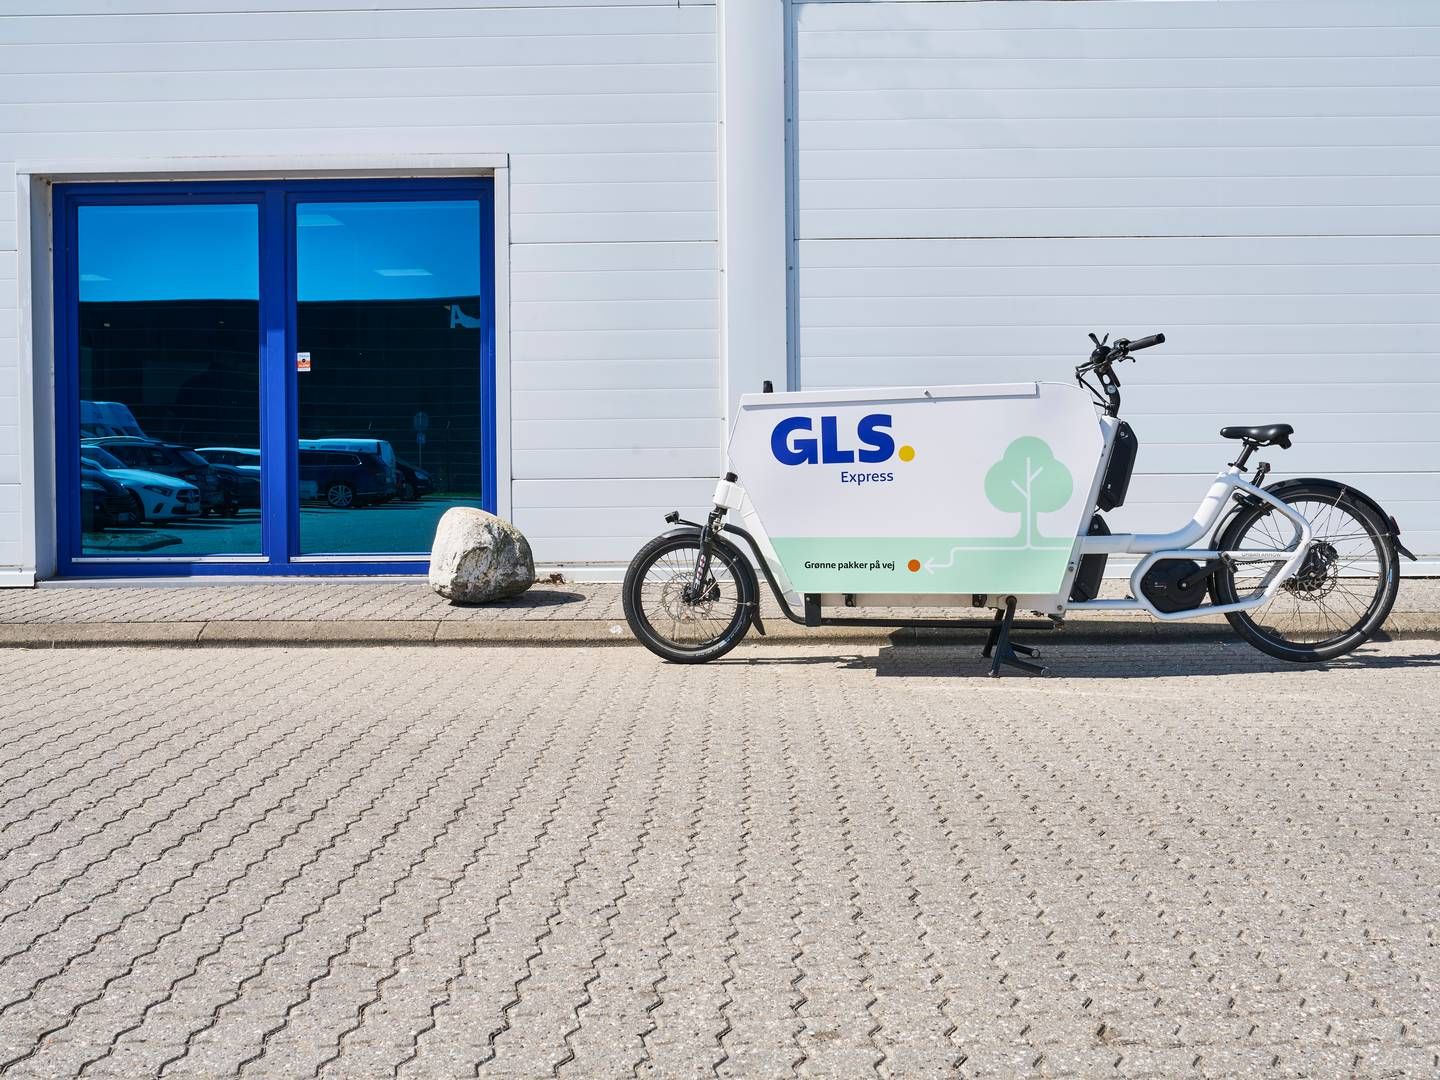 Cyklerne har en vis effekt i storbyerne, lyder det fra direktøren, men der er også mange ting, cyklerne ikke kan gøre bedre end en varebil, fortæller adm. direktør Steen Ravnsbæk Kristensen. | Foto: GLS, PR